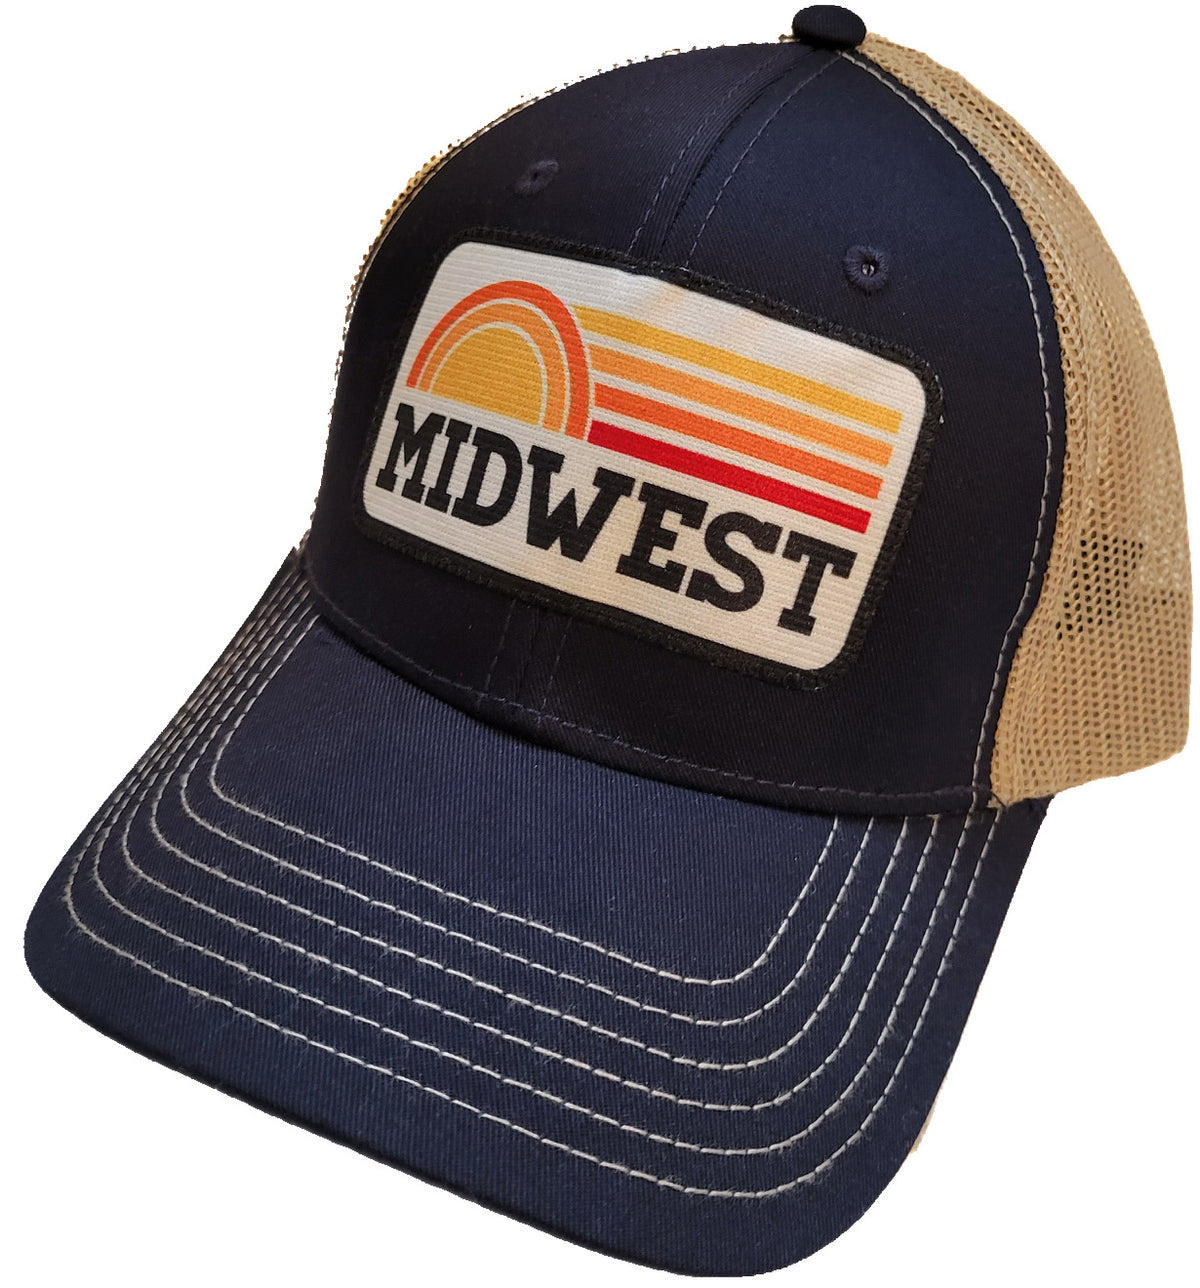 Midwest Sunrise Hat